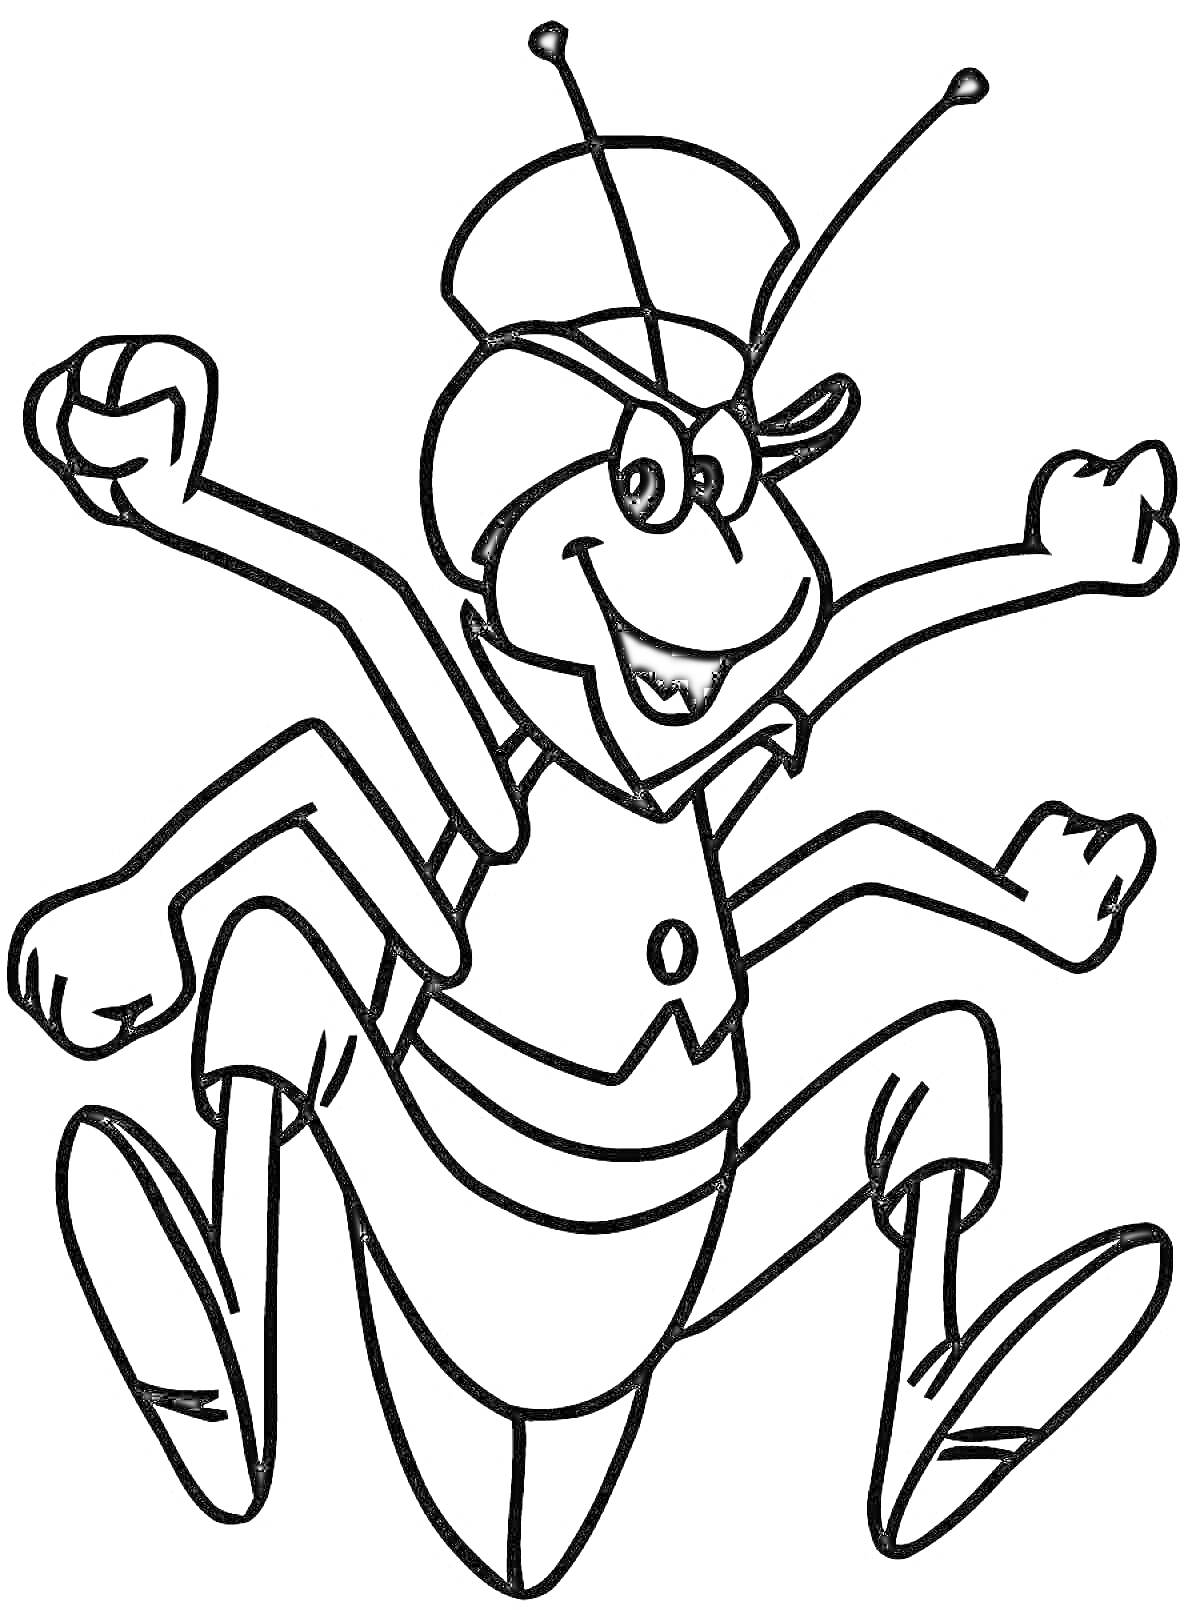 Раскраска Кузнечик с шляпой и улыбкой, с поднятыми руками и ногами вверх